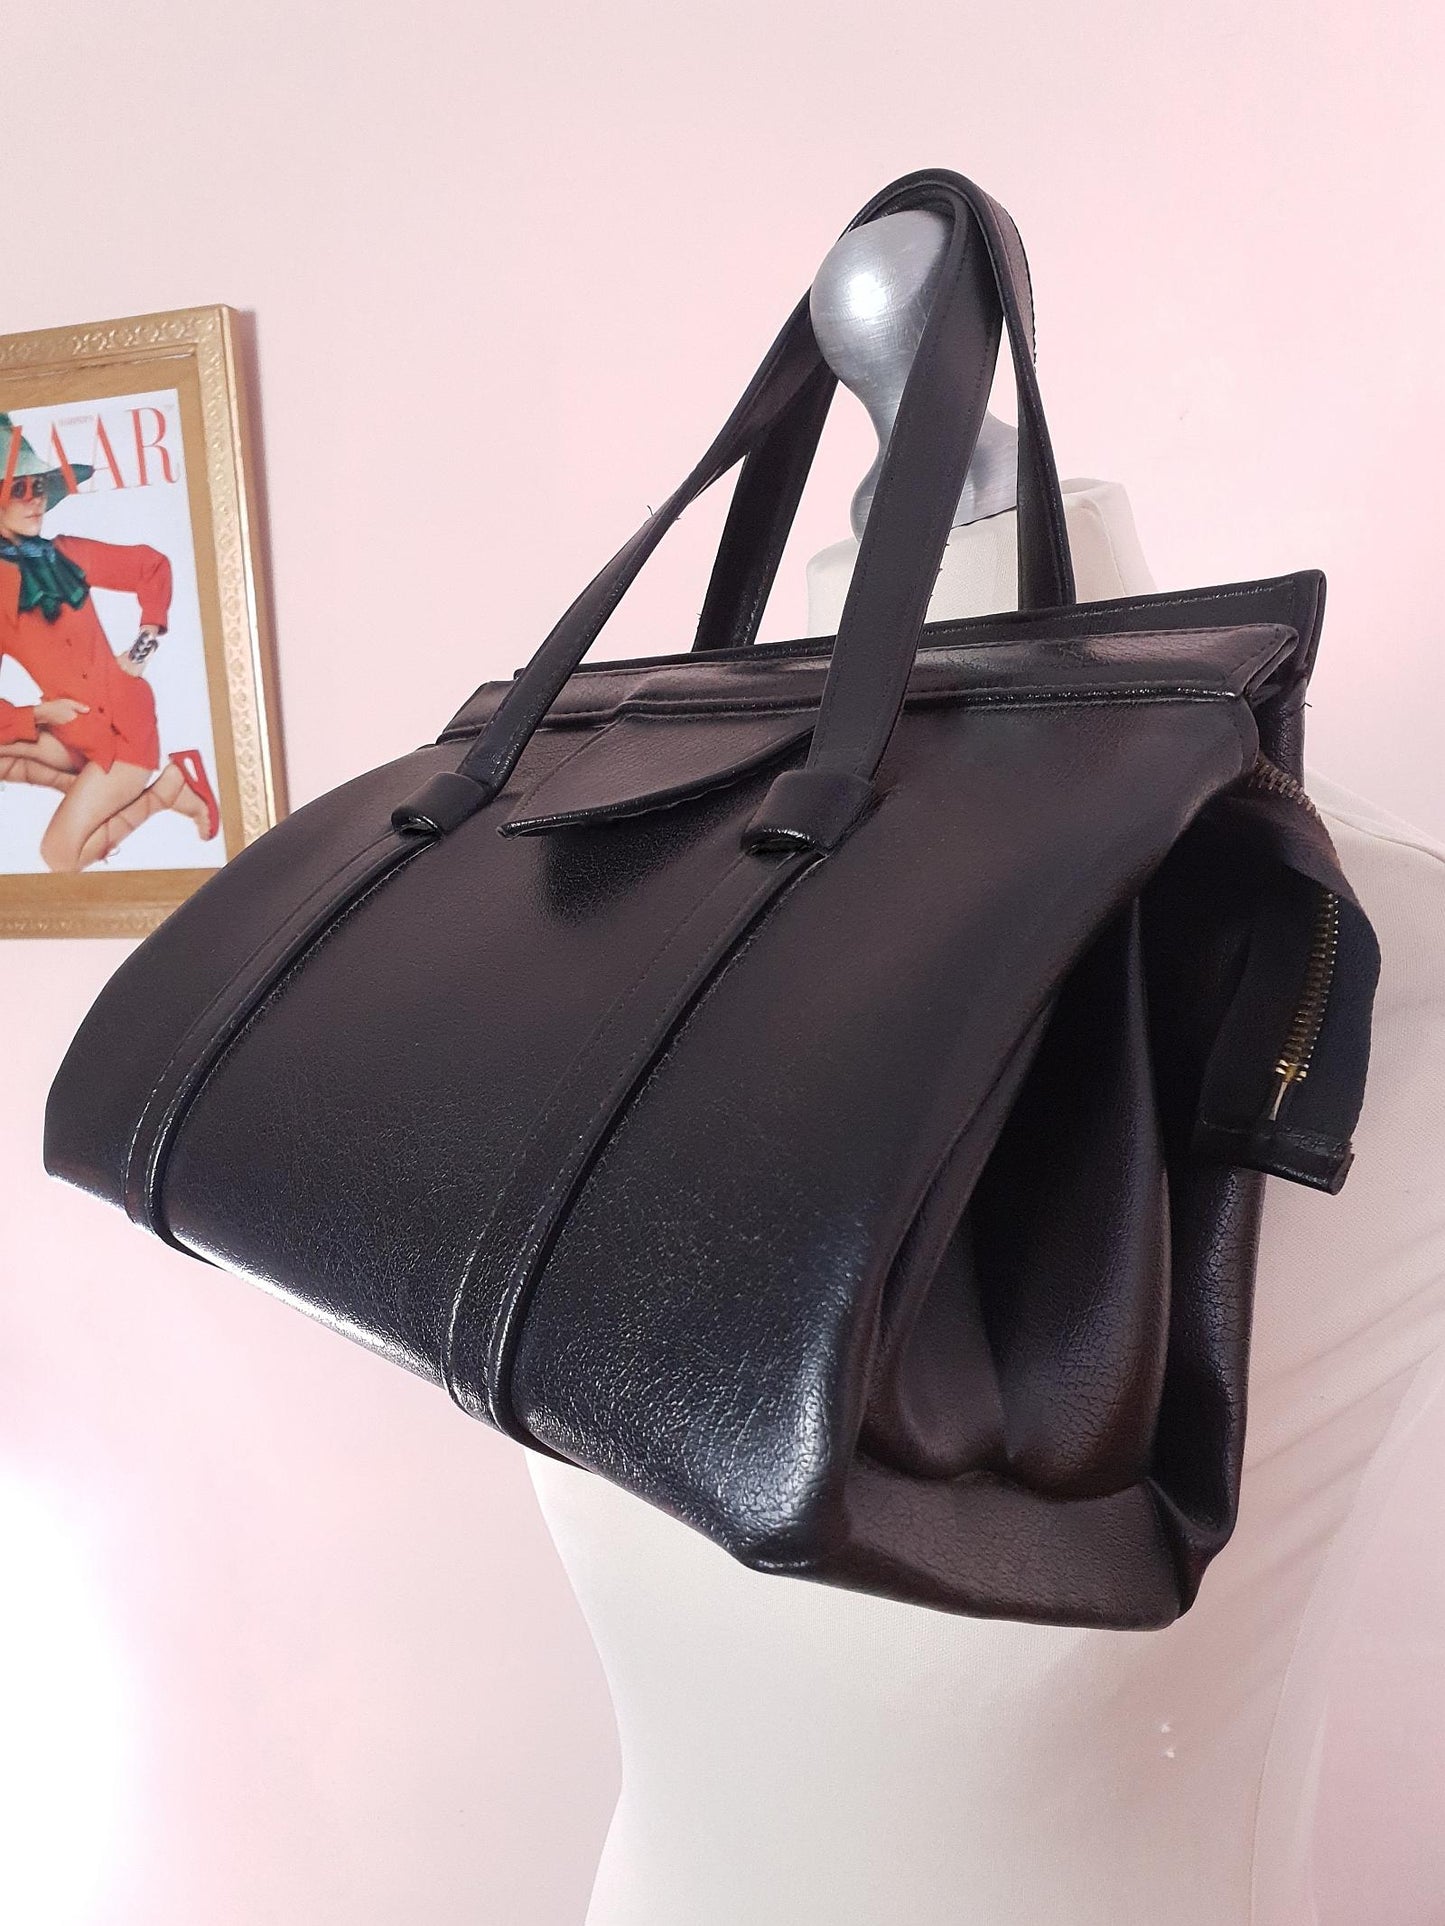 Vintage 1960s Black Handbag Tote Retro Bag Top Handle